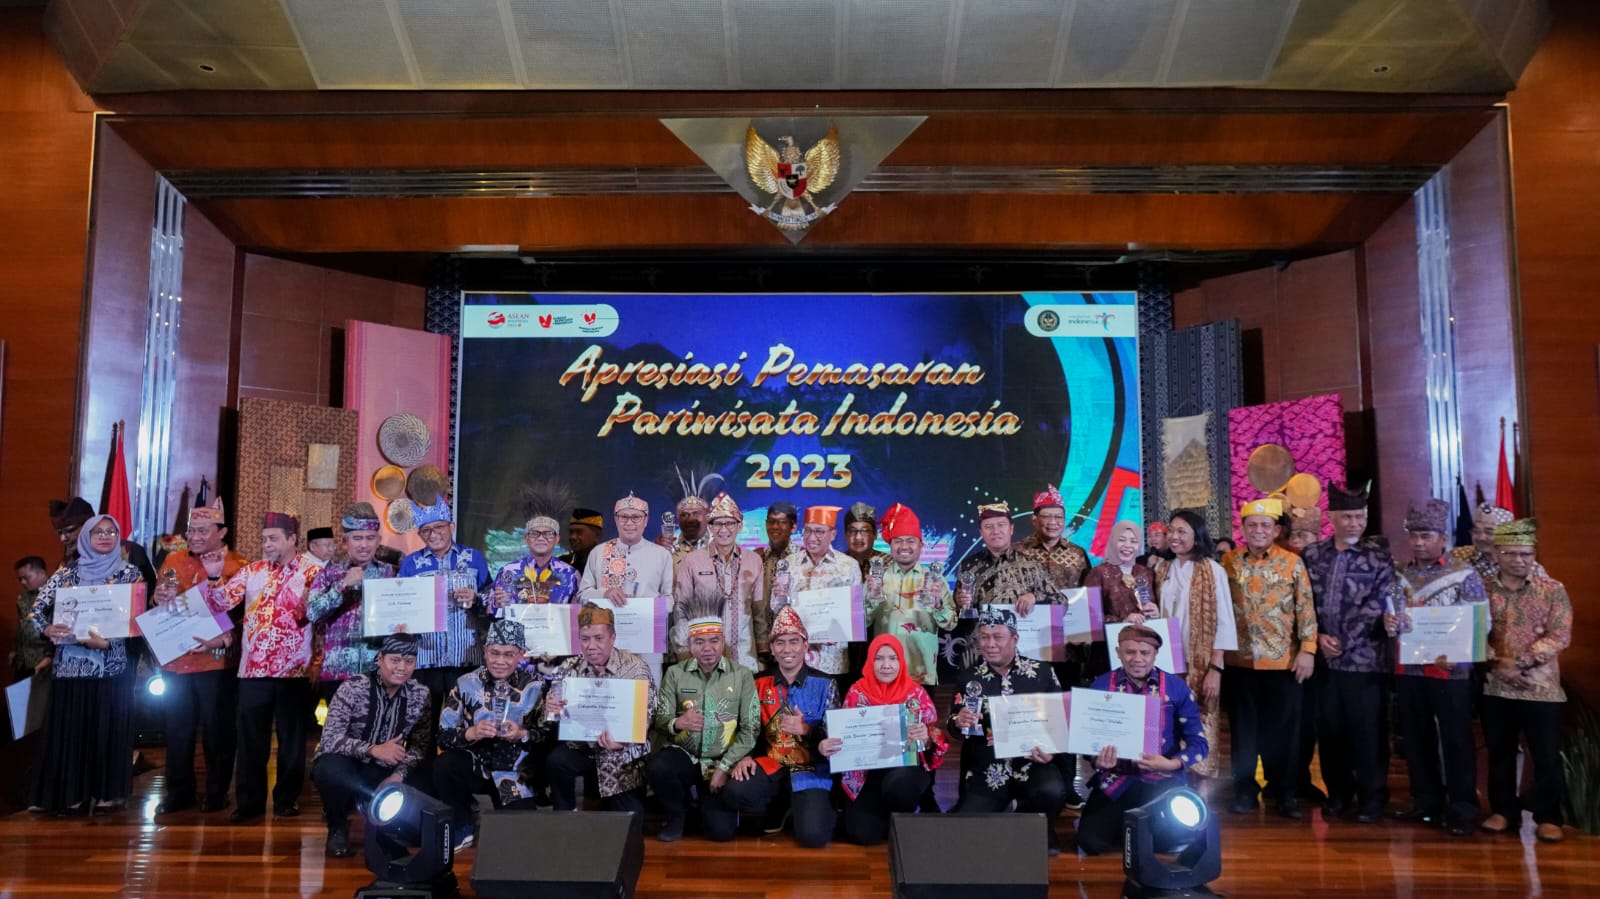 Dinas Pariwisata Makassar Raih Penghargaan Lomba Video Kreatif Bangga Berwisata di Indonesia